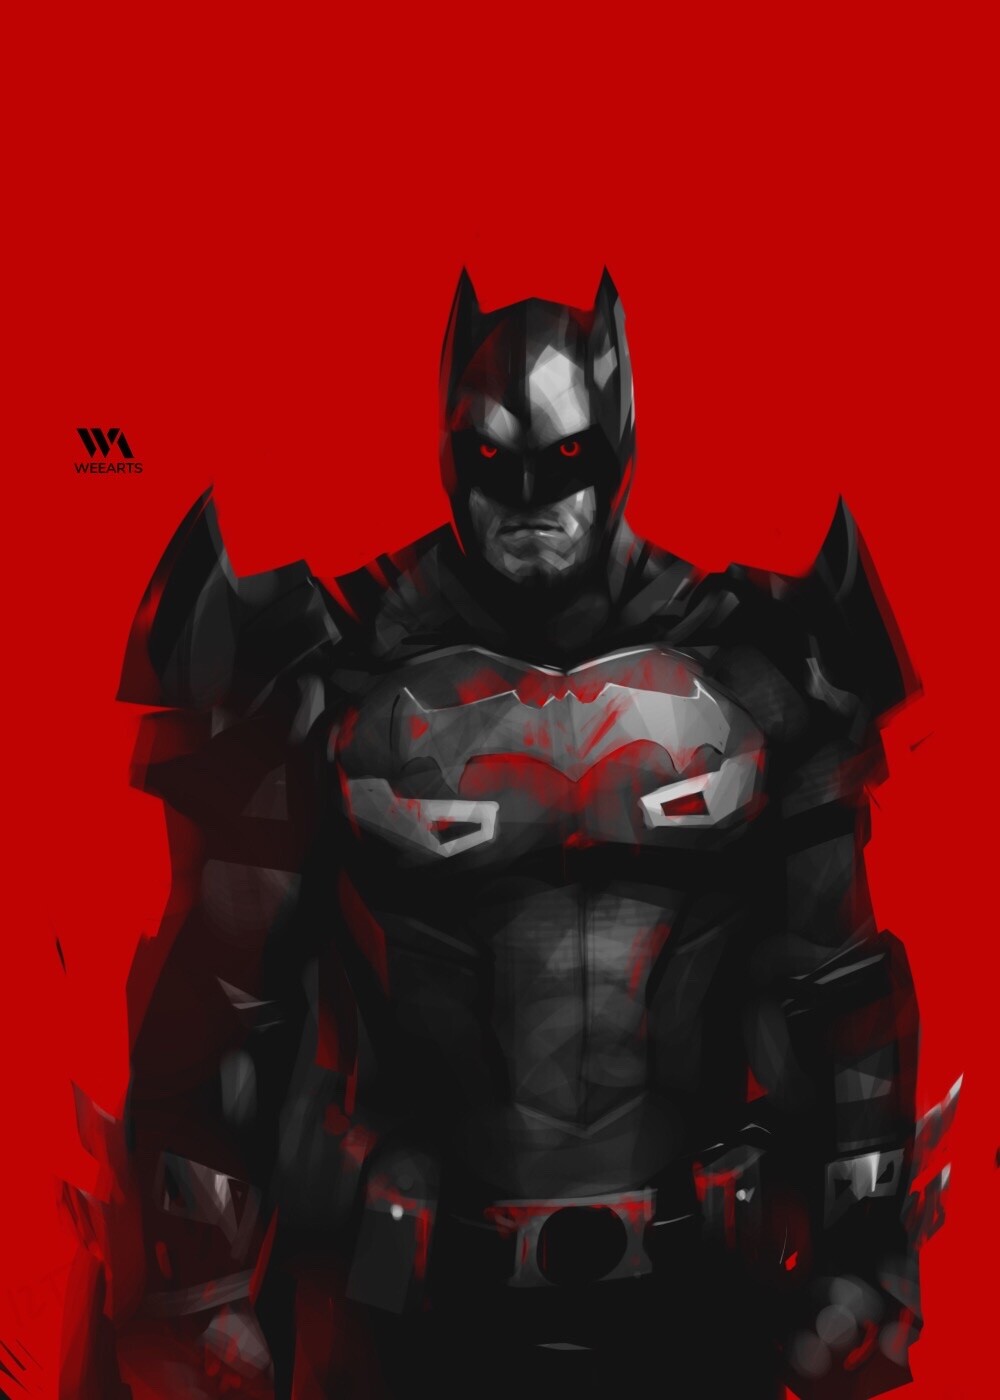 ArtStation - Flashpoint Batman - RED background series